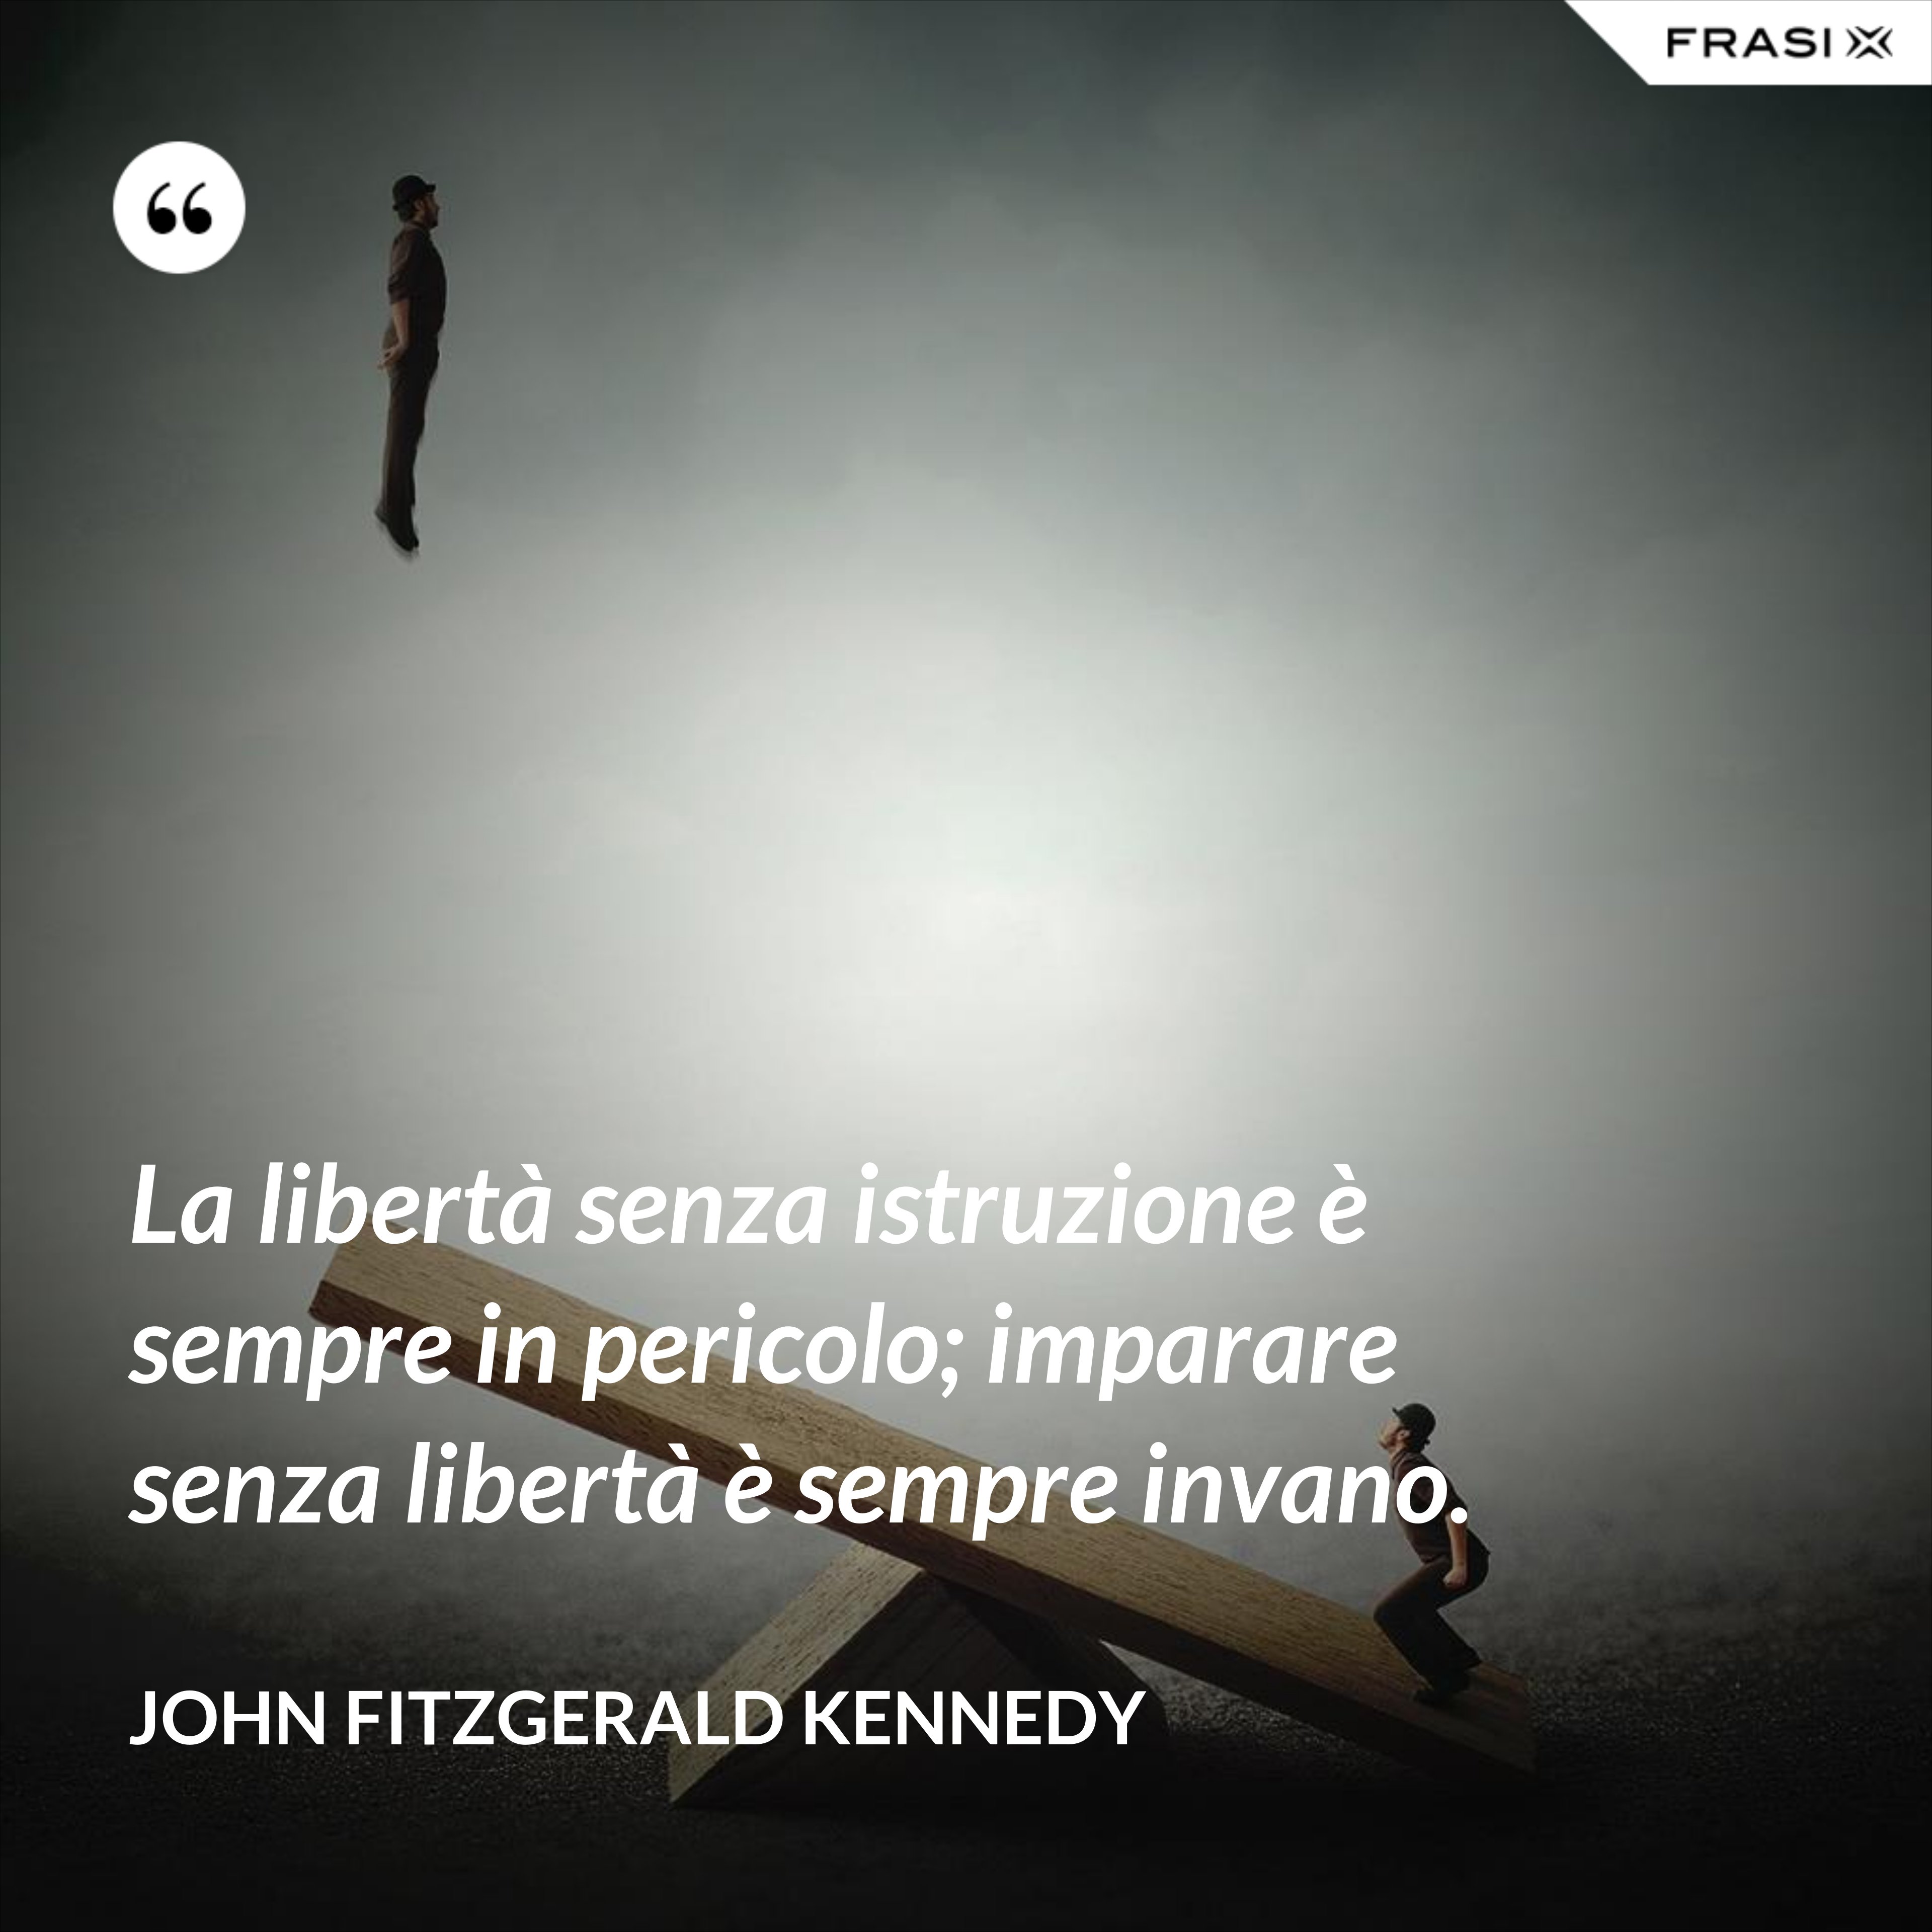 La libertà senza istruzione è sempre in pericolo; imparare senza libertà è sempre invano. - John Fitzgerald Kennedy